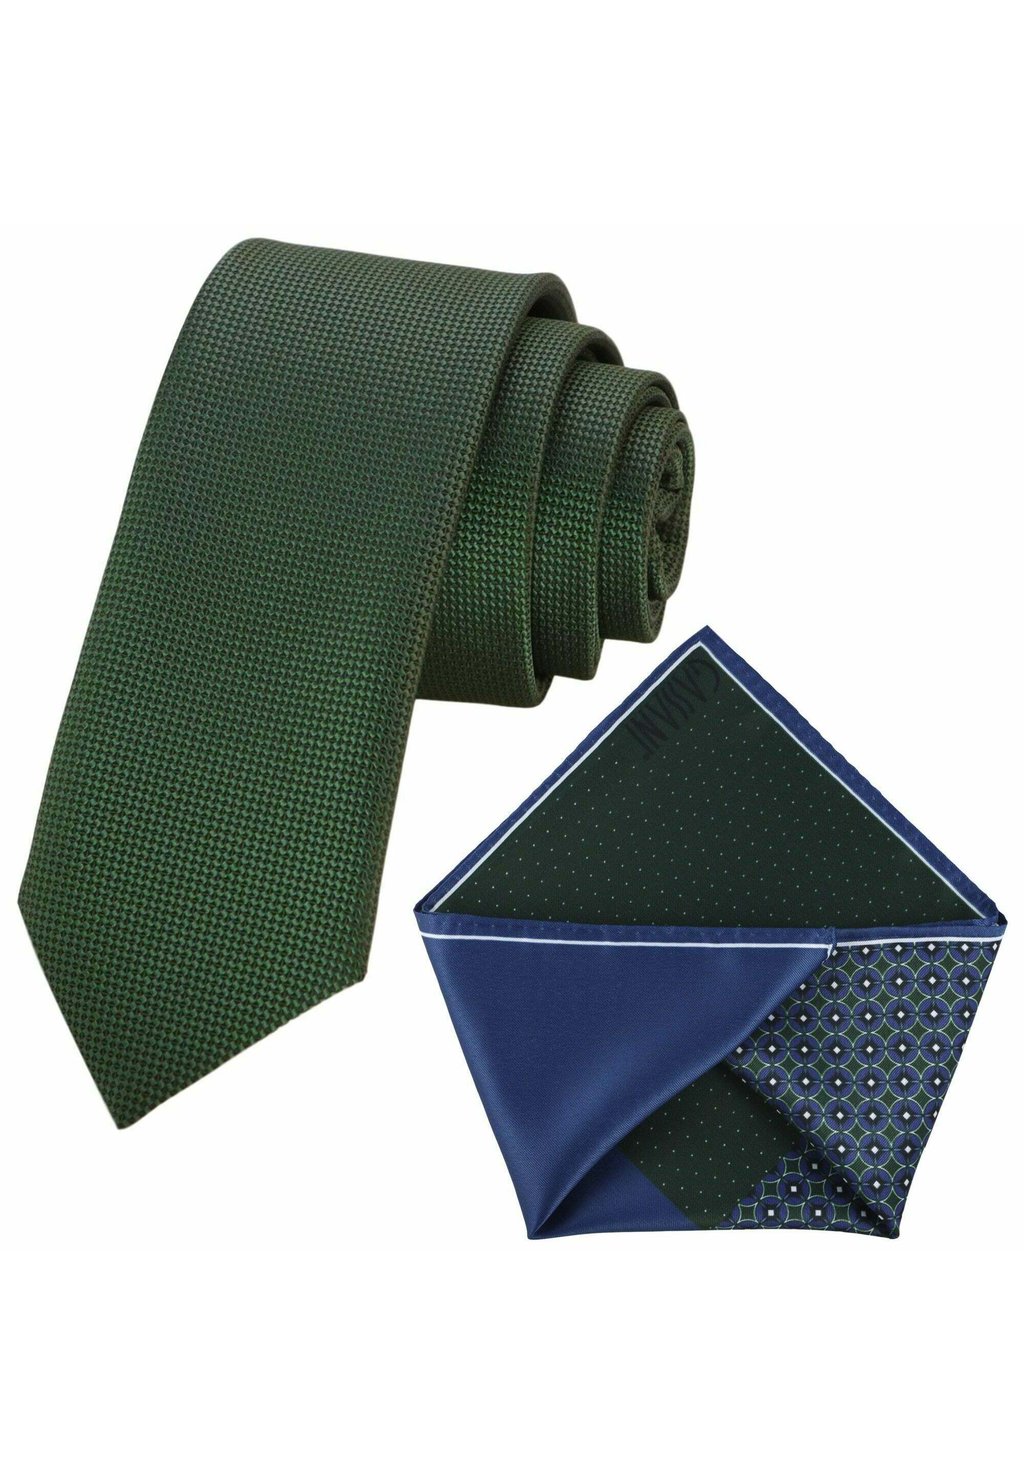 Нагрудный платок SET Gassani, цвет moos grün jägergrün ultramarin blau dunkel grün weiß gepunktet embleme stahlblau